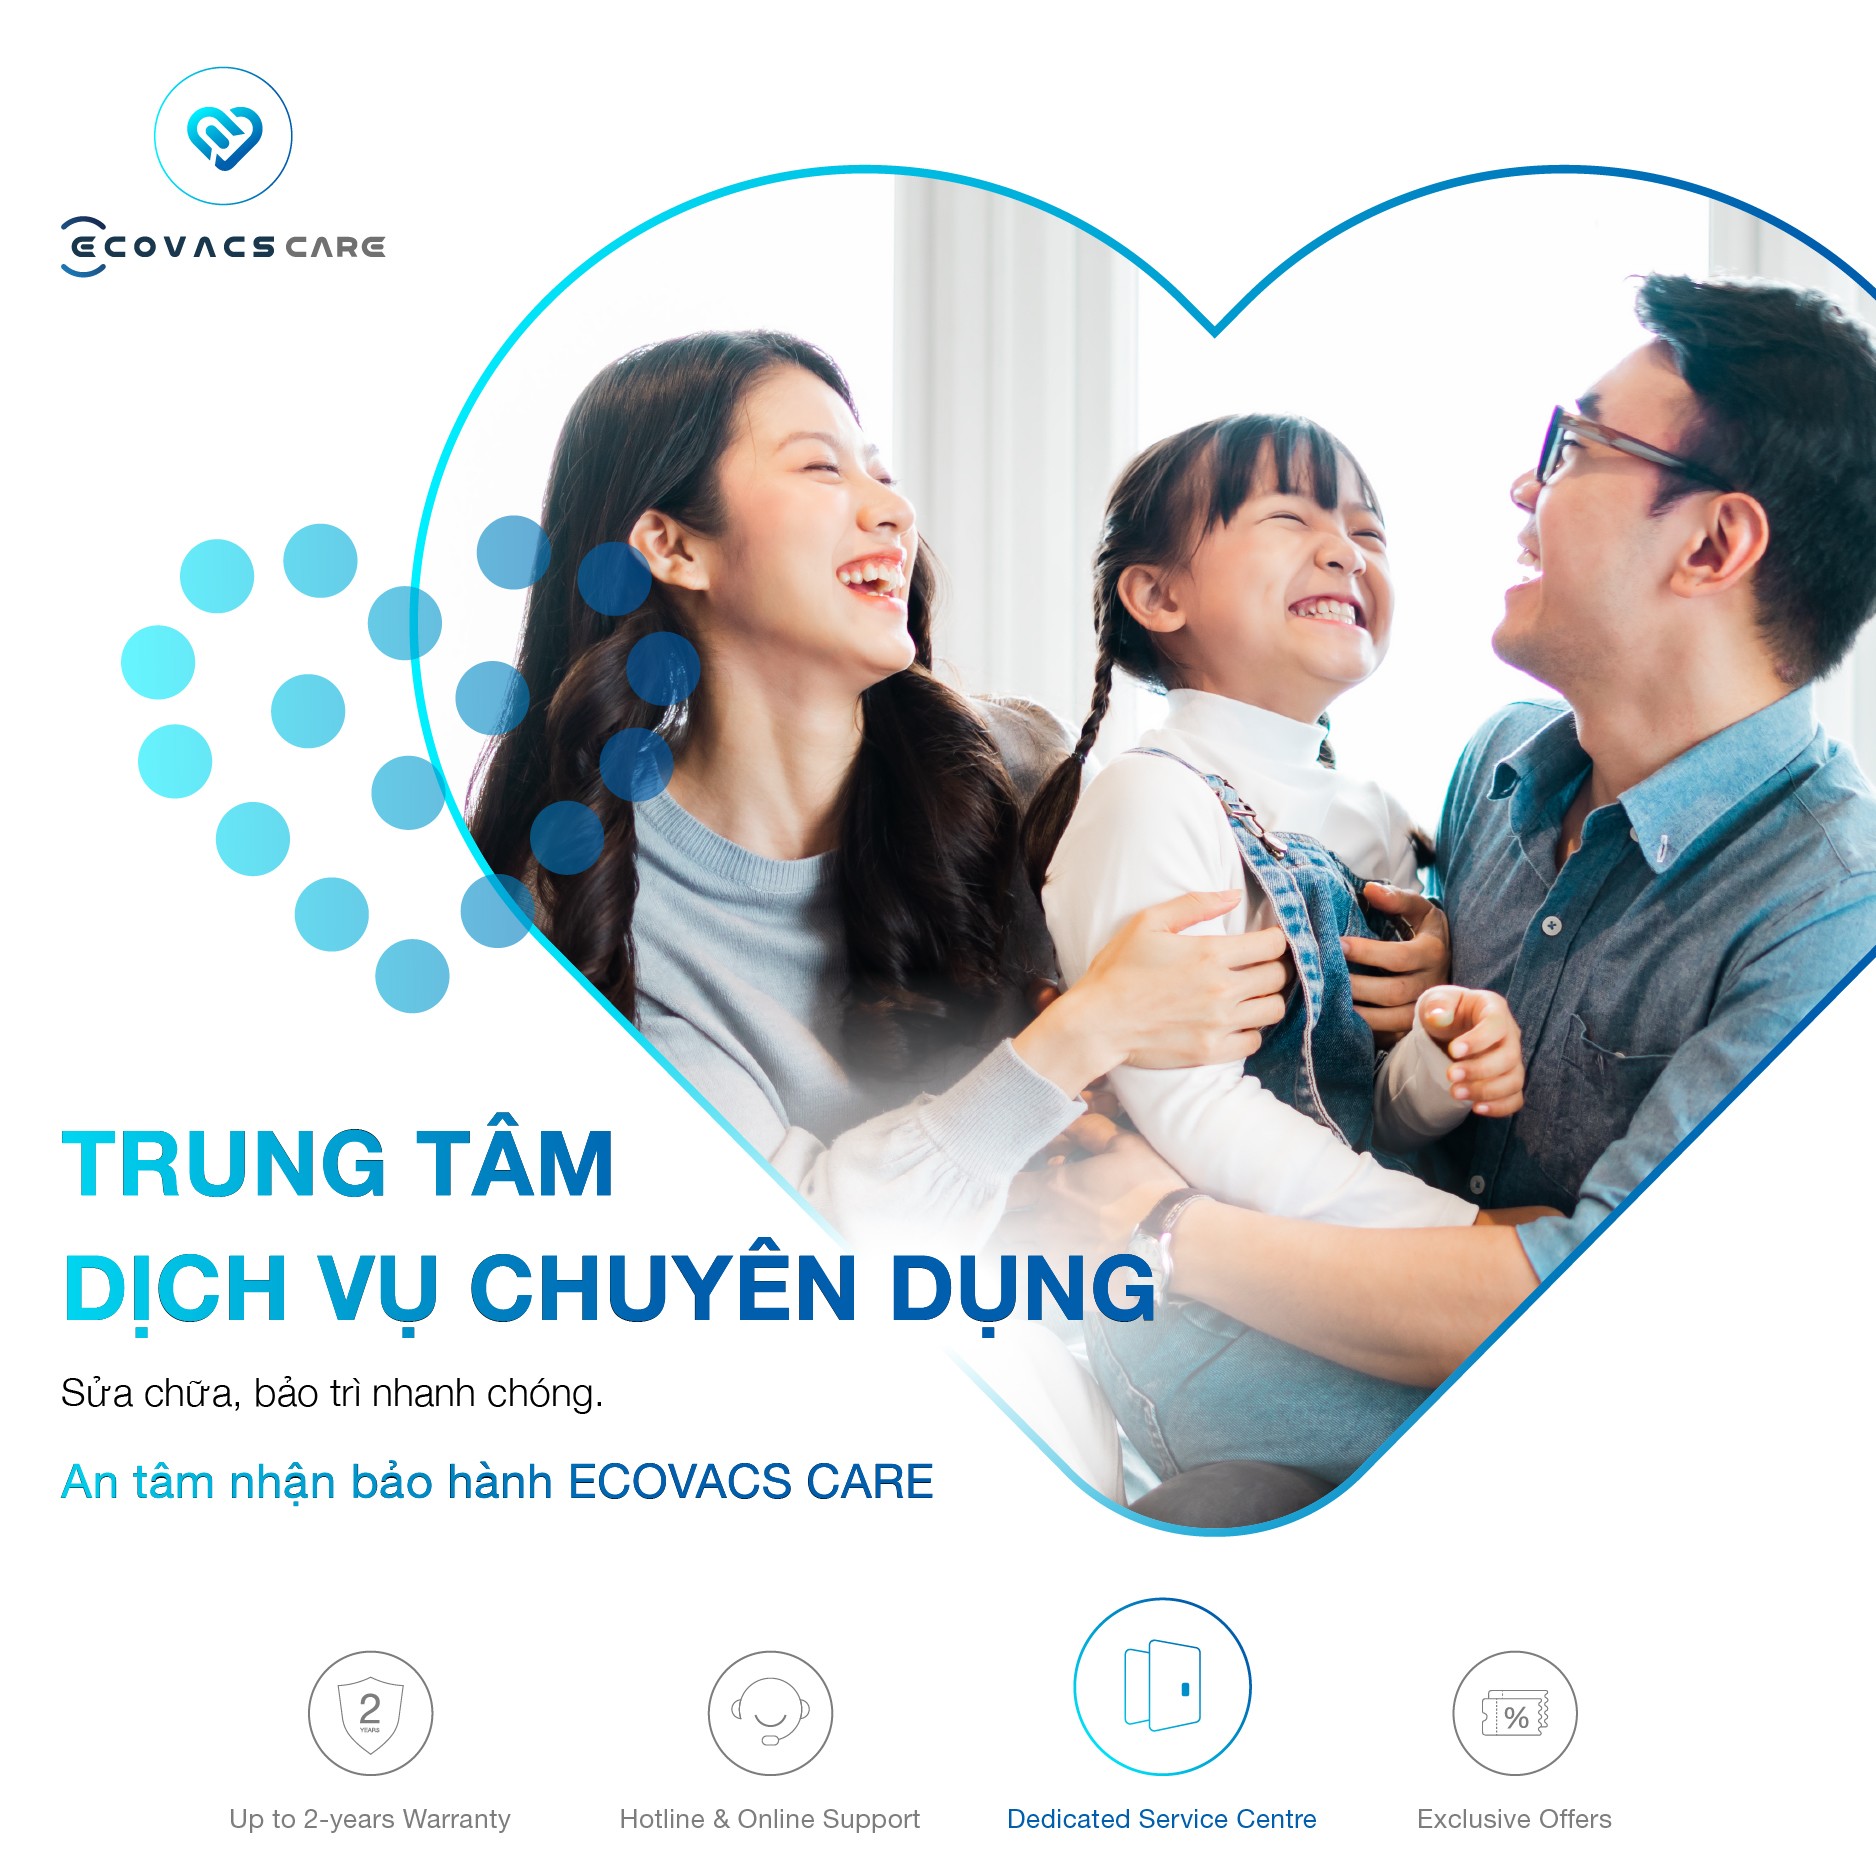 Thông qua dịch vụ Ecovacs Care, Ecovacs mong muốn tăng cường mối quan hệ với khách hàng Việt Nam, cũng như khẳng định chất lượng và uy tín của thương hiệu.